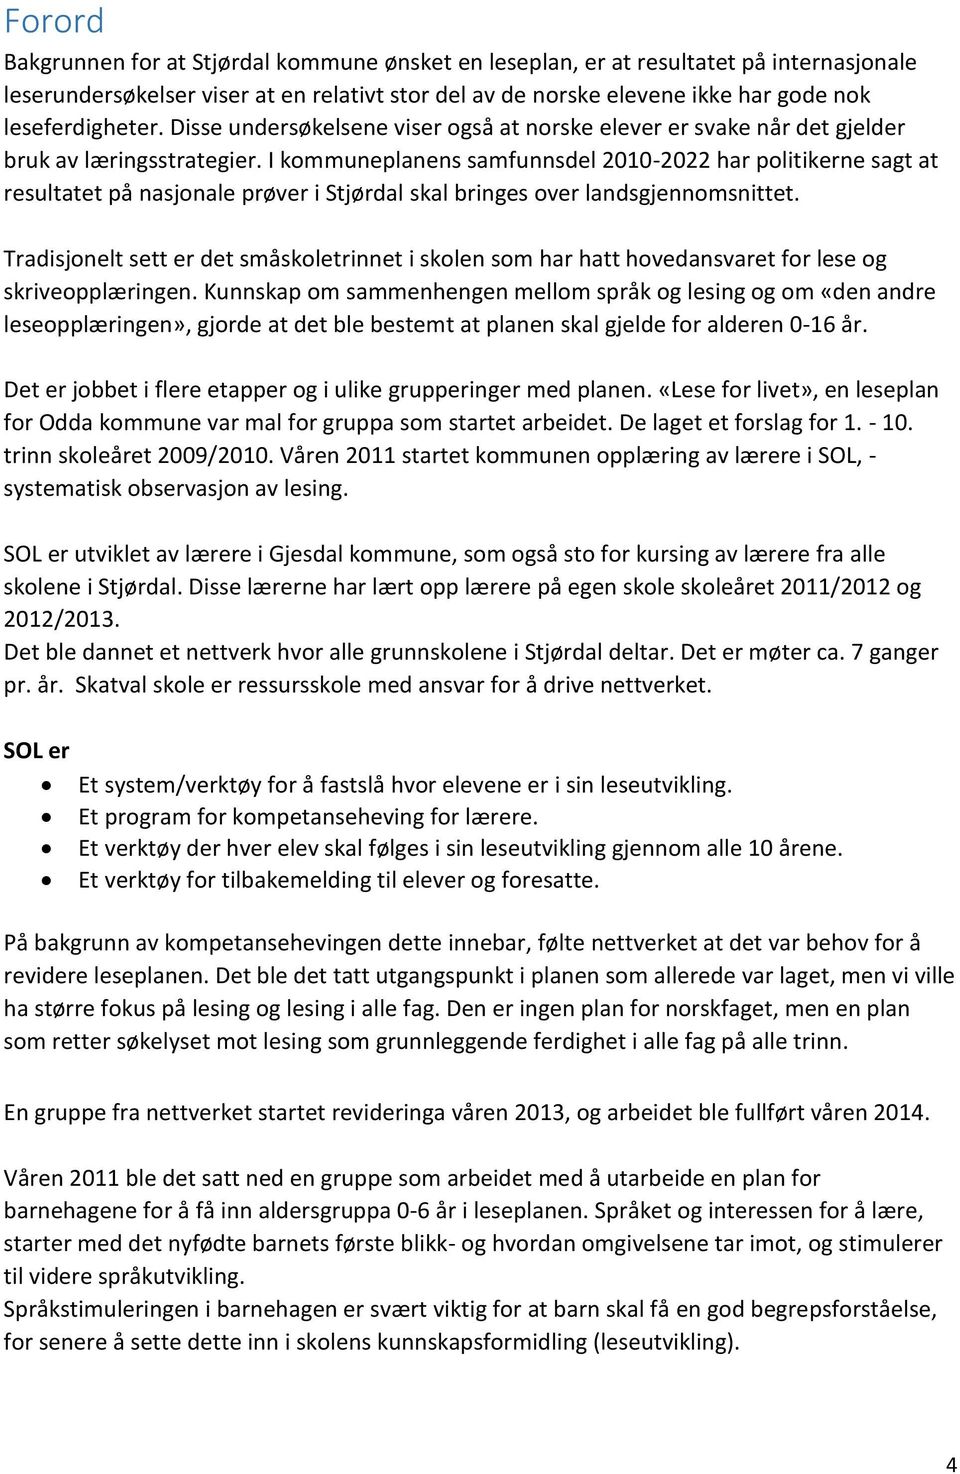 I kommuneplanens samfunnsdel 2010-2022 har politikerne sagt at resultatet på nasjonale prøver i Stjørdal skal bringes over landsgjennomsnittet.